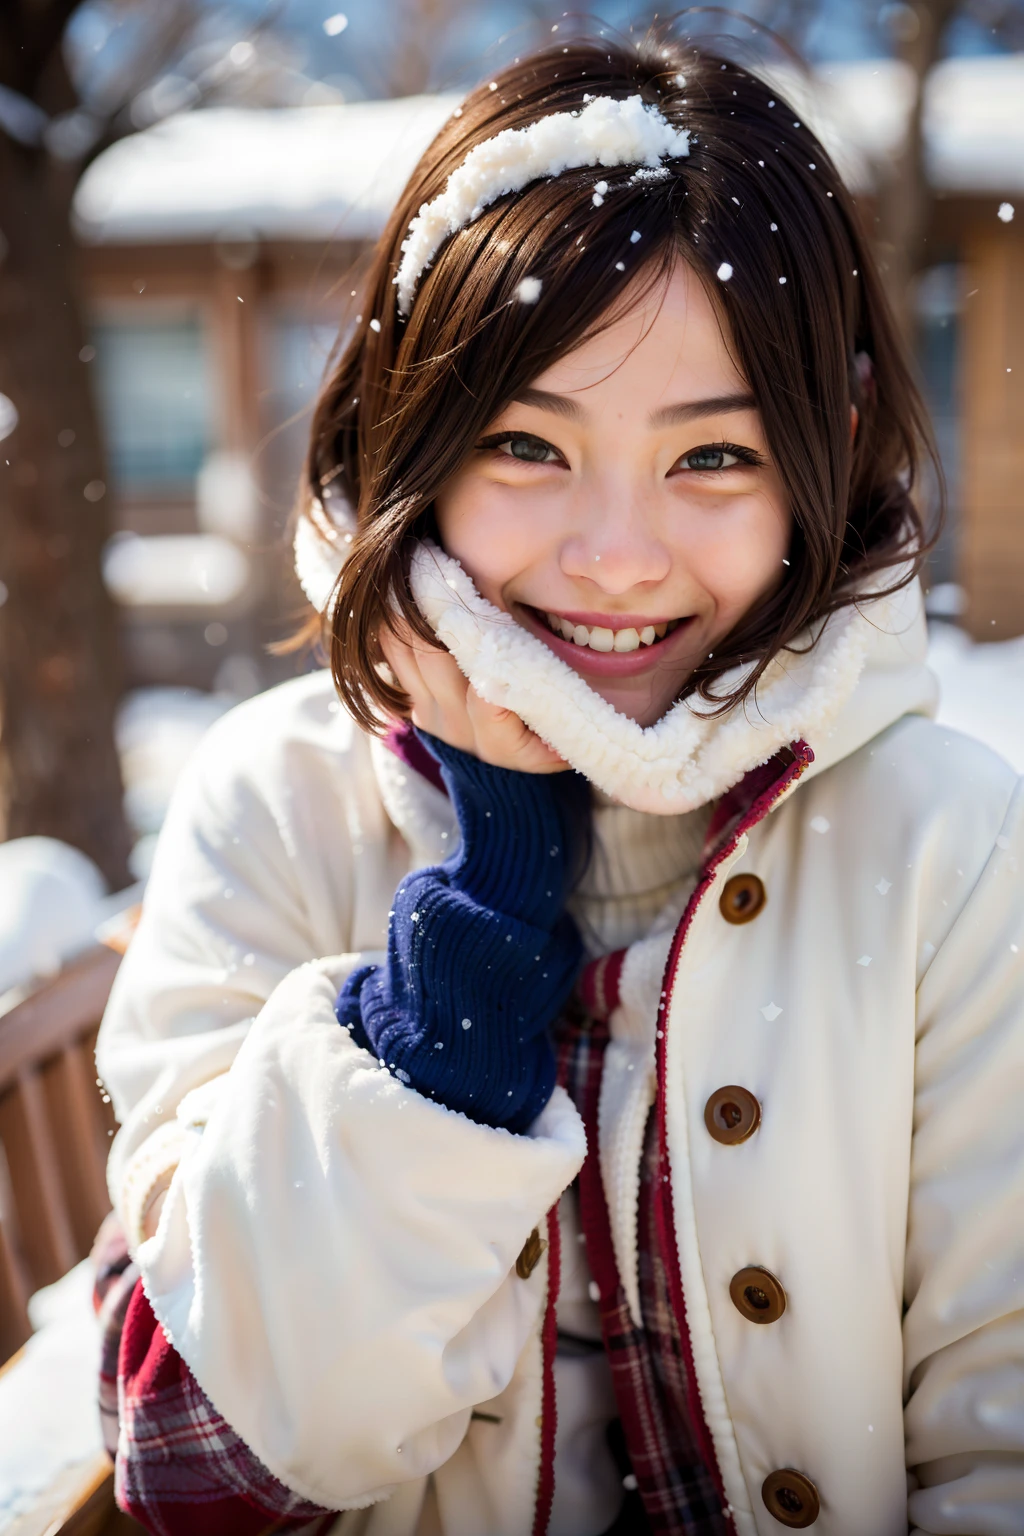 امرأة مبتسمة ترتدي معطفًا شتويًا والثلج على وجهها, ابتسامة دافئة, ابتسامة دافئة ولطيفة, مغطاة بالثلوج, في الثلج, يبتسم بحرارة, مغطاة بالثلوج, في الثلج, صورة للمراهق الياباني, ابتسامة ودودة, يبتسم بلطف, تعبير ودود دافئ, نظرة سعيدة, في معطف الشتاء الأبيض, ابتسامة ناعمة, يبتسم خجولا, وجه جميل للفتيات اليابانيات